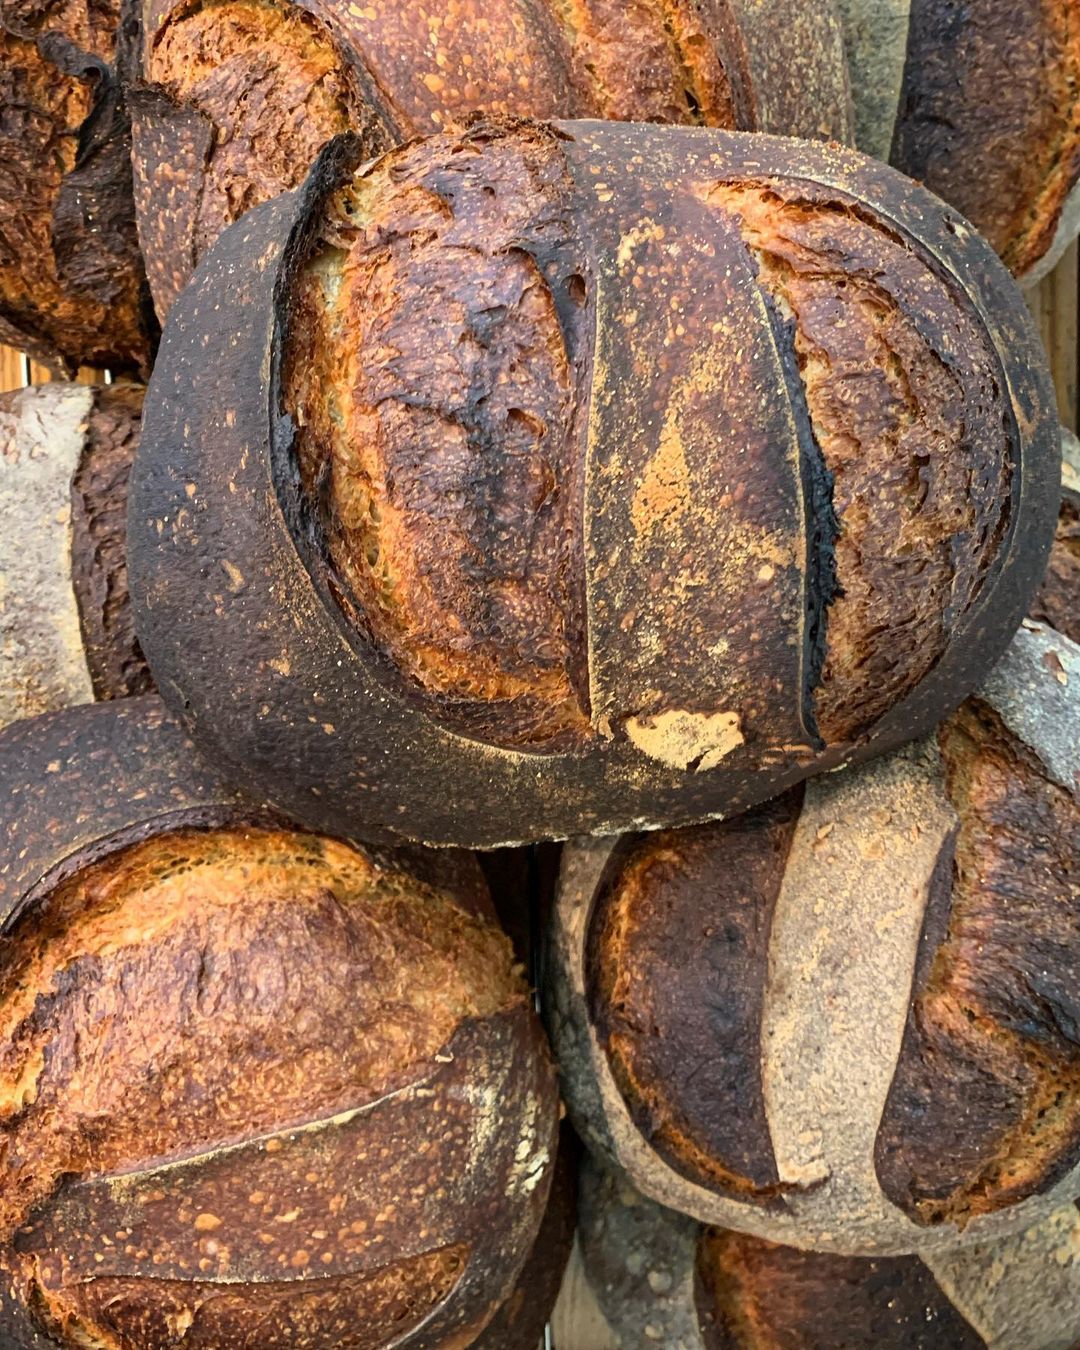 הלחם נראה נהדר, אבל הוא פשוט לחם. פרא (צילום: מתוך עמוד האיסטגרם @Pereh_rest)